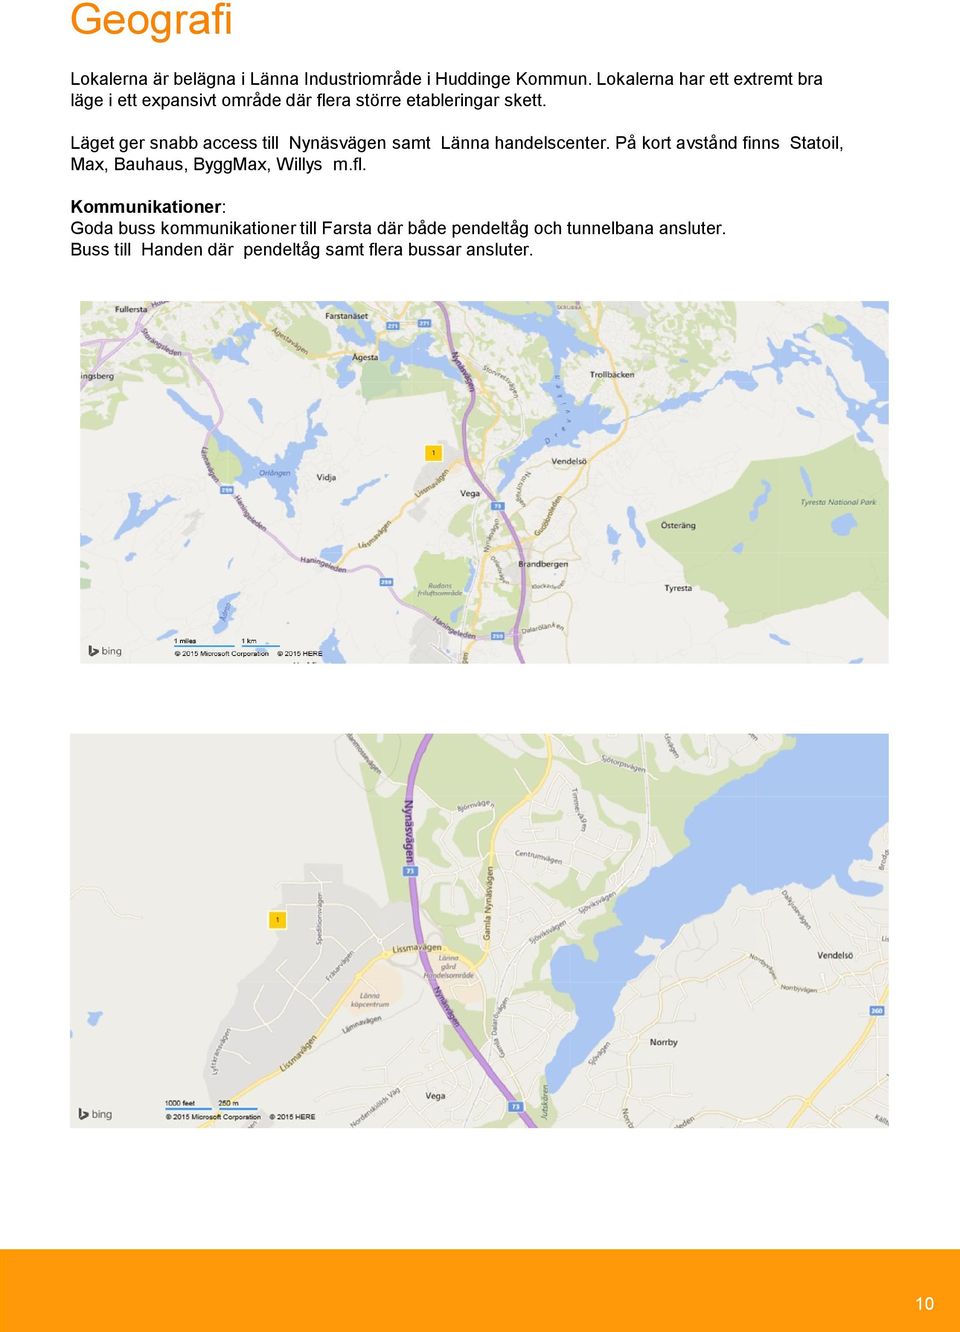 Läget ger snabb access till Nynäsvägen samt Länna handelscenter.